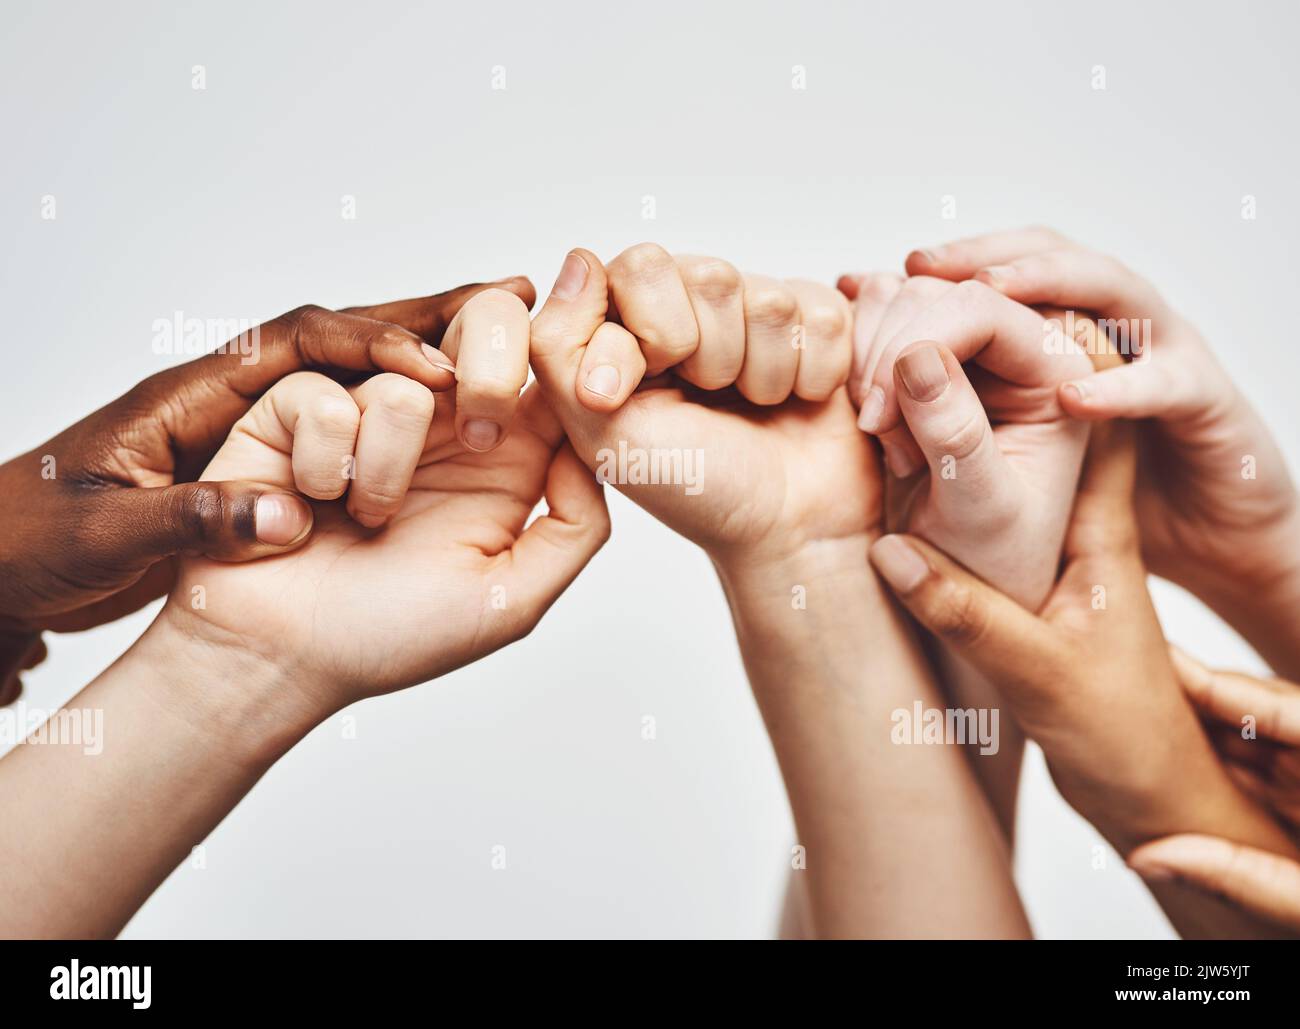 Halten Sie sich nur ein wenig länger fest. Eine Gruppe von Händen, die sich vor einem weißen Hintergrund aneinander halten. Stockfoto